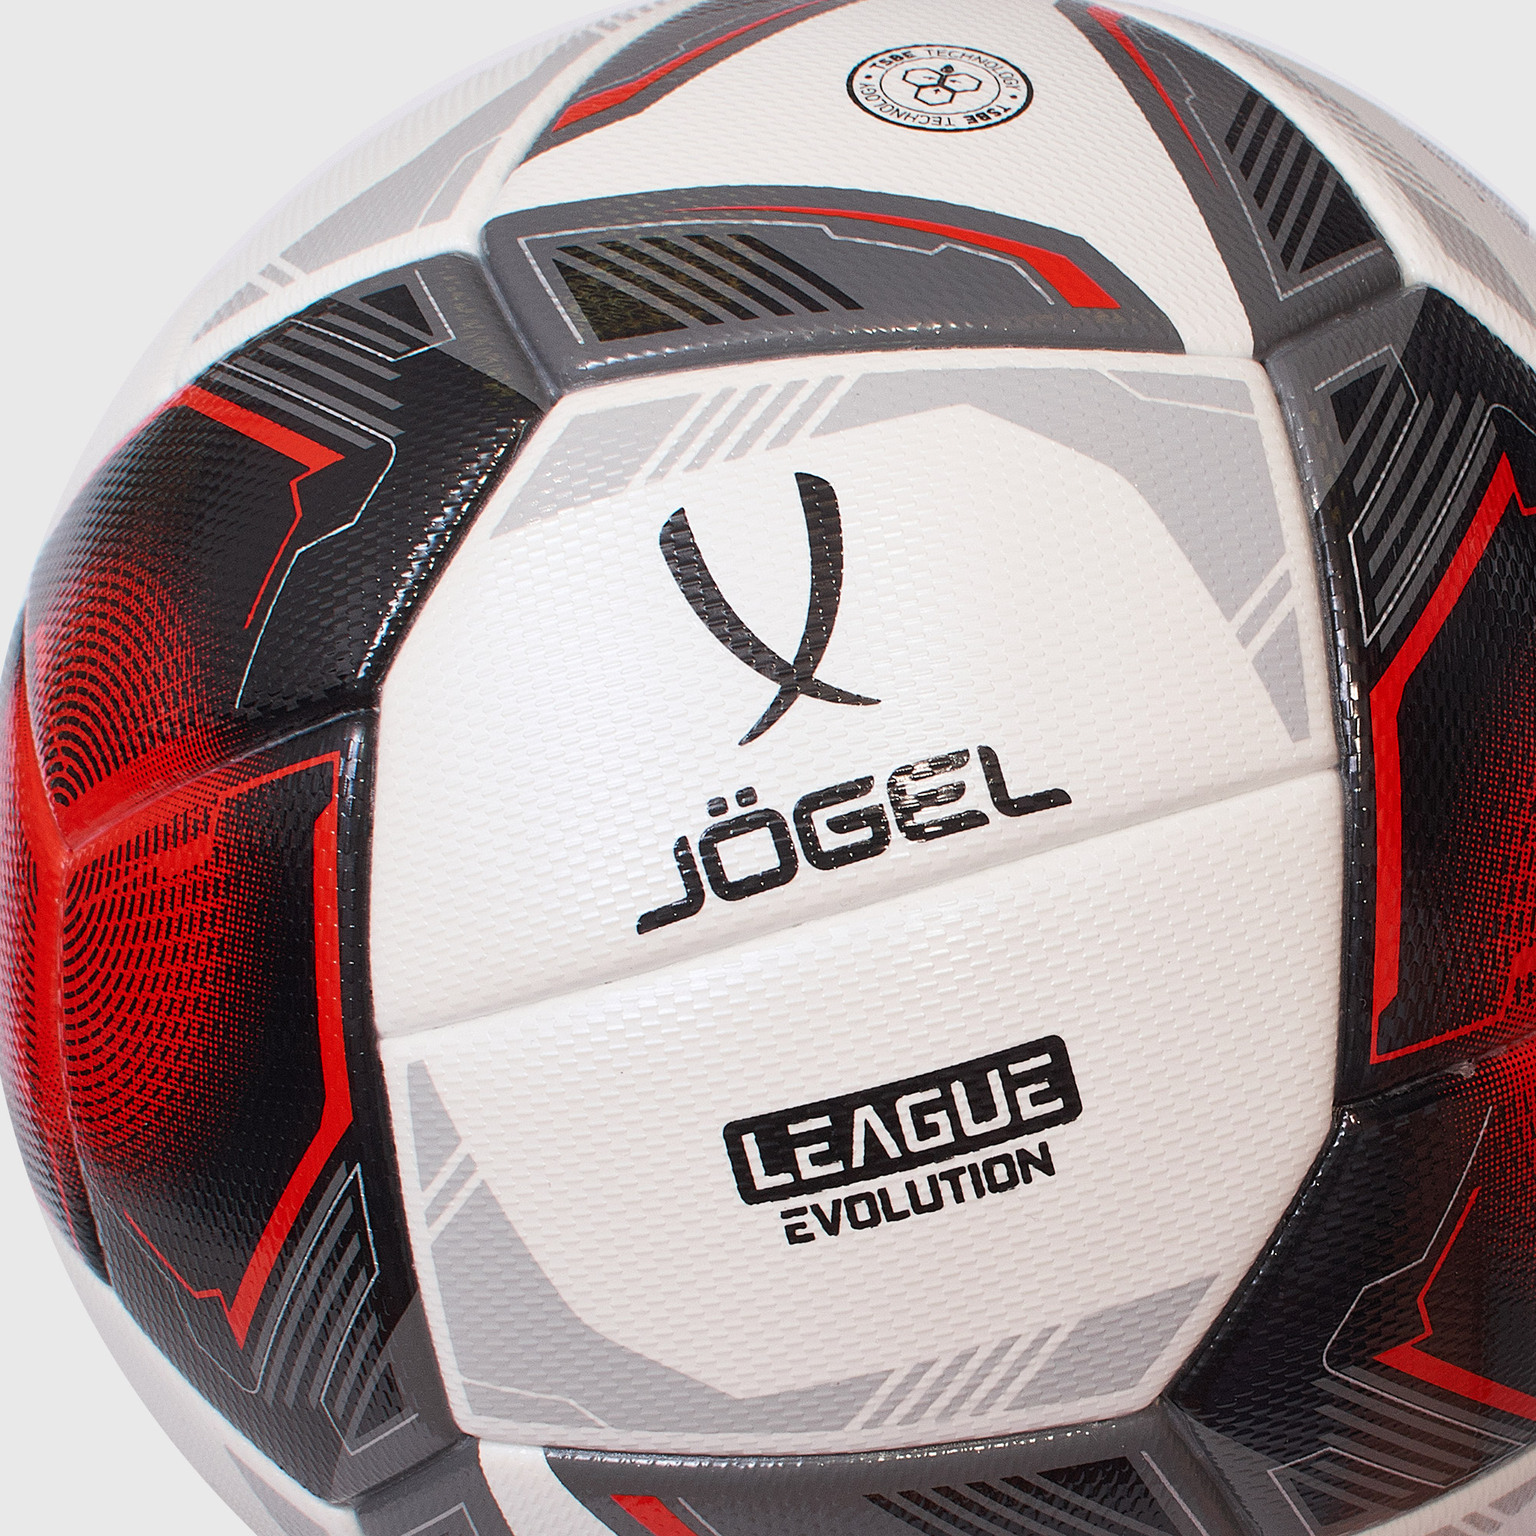 Футбольный мяч Jogel League Evolution Pro